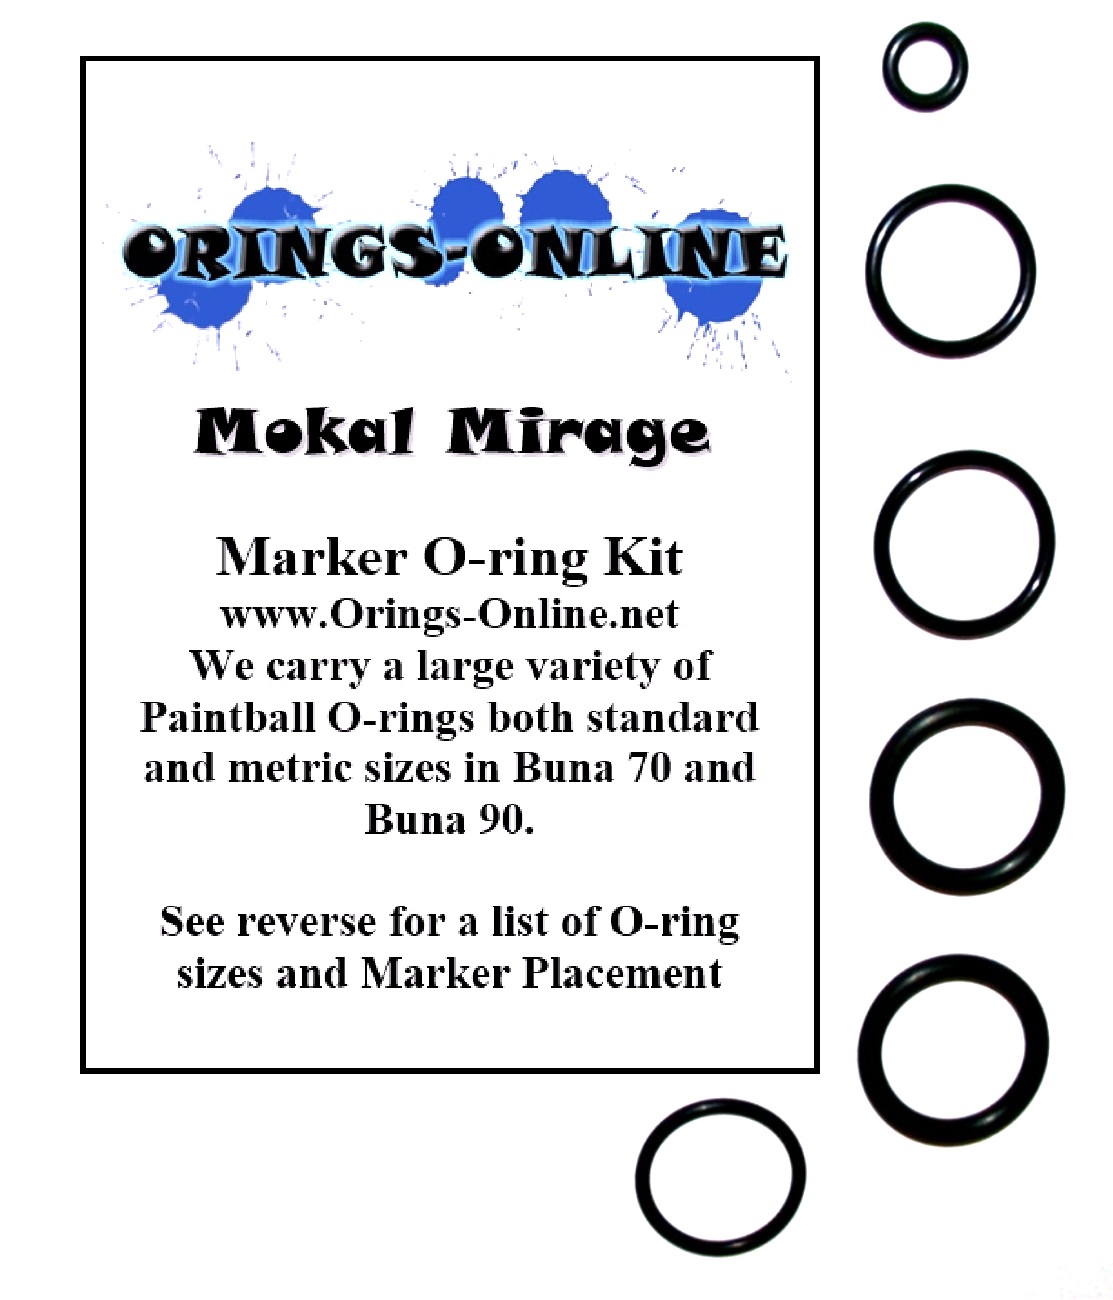 Mokal Mirage Marker O-ring Kit